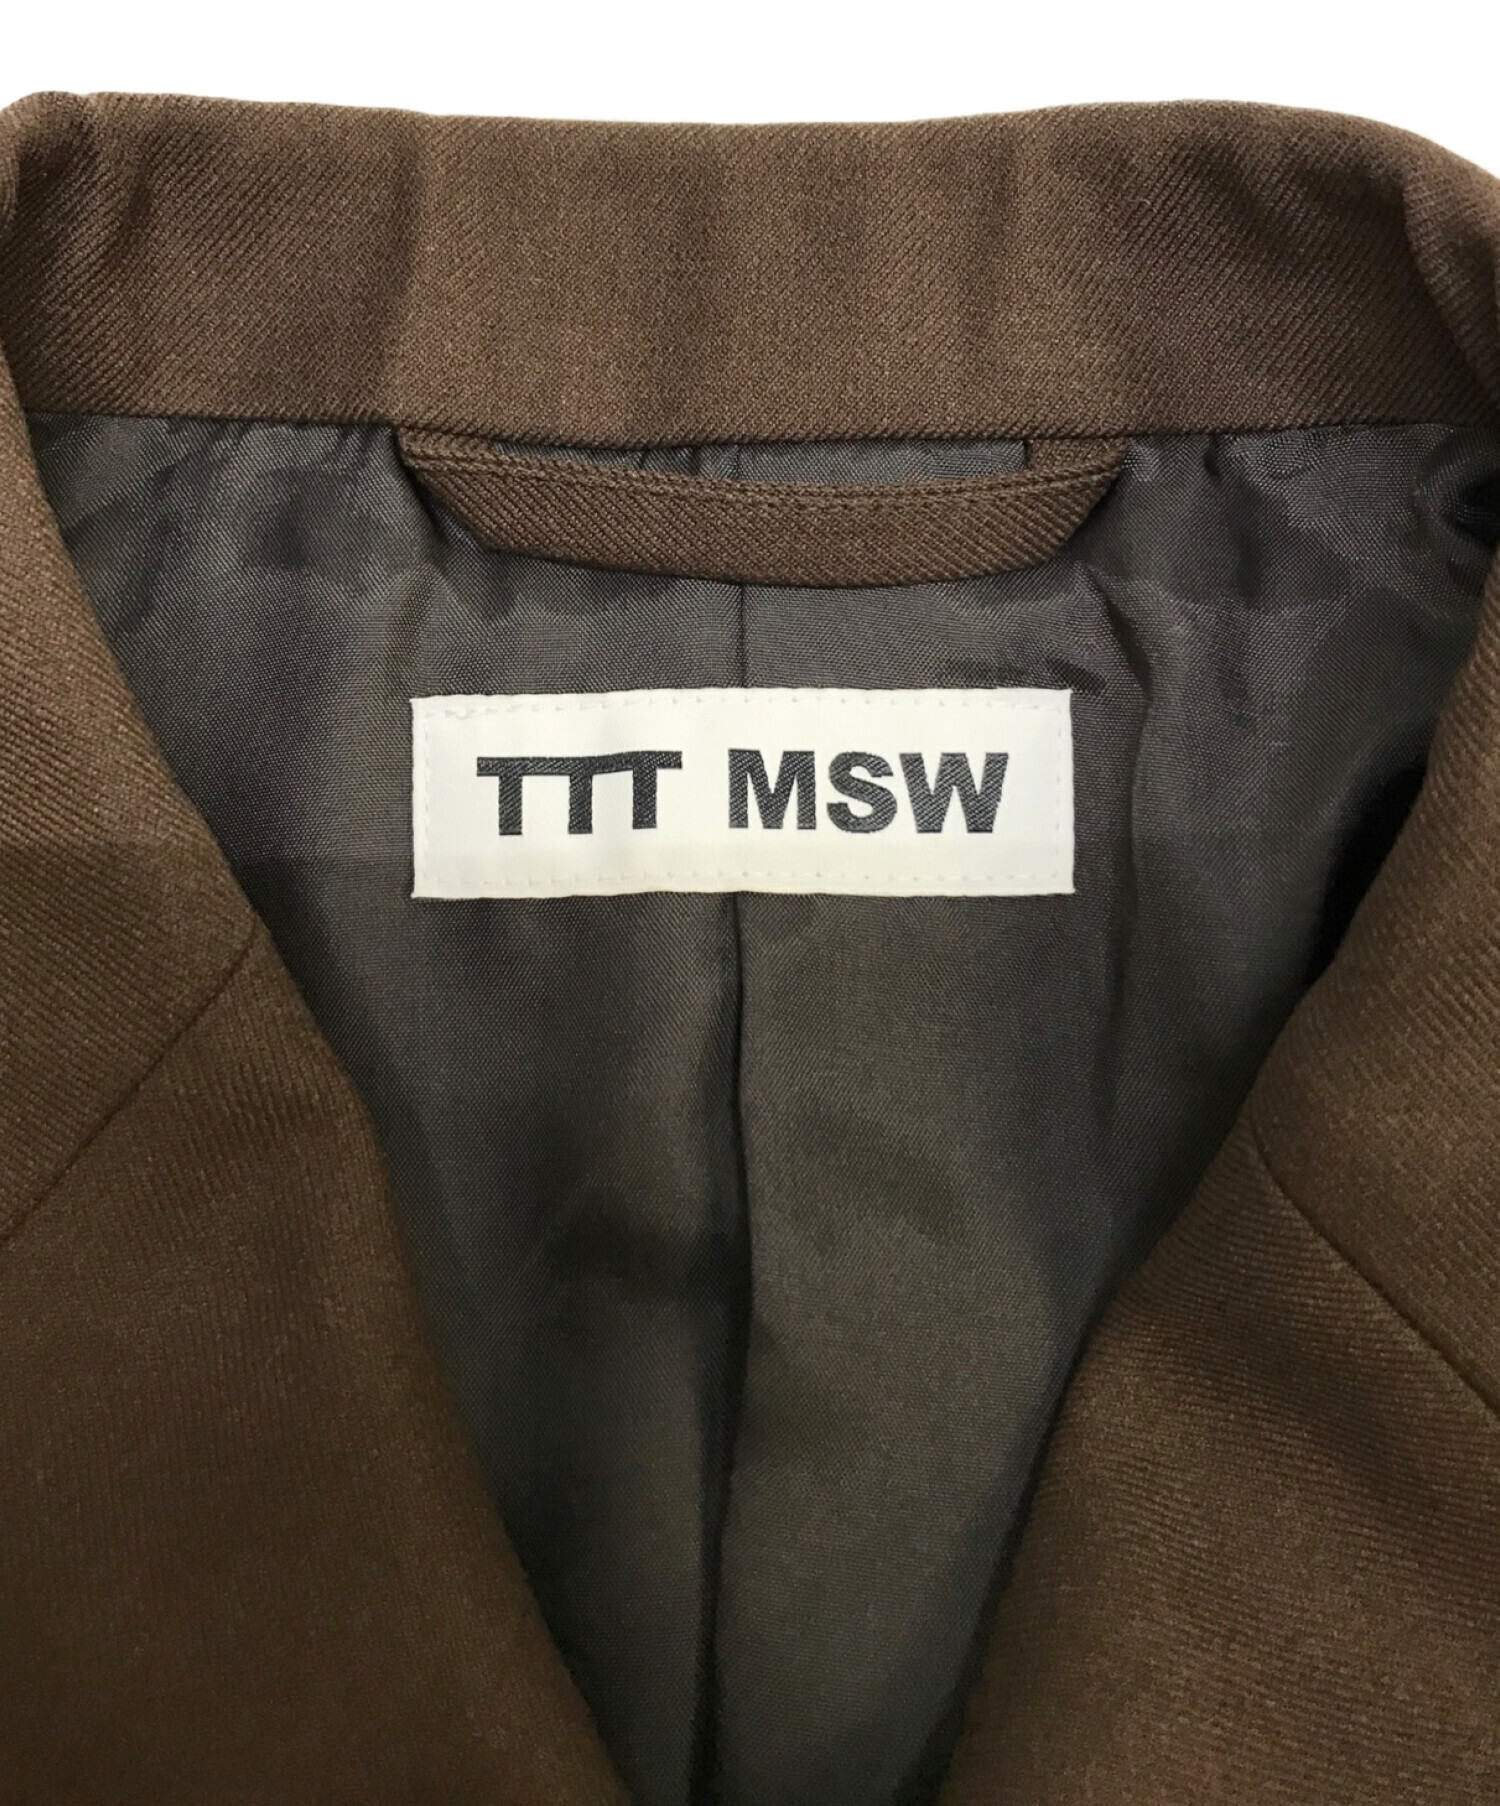 TTT MSW (ティーモダンストリートウェア) セットアップ ブラウン サイズ:M